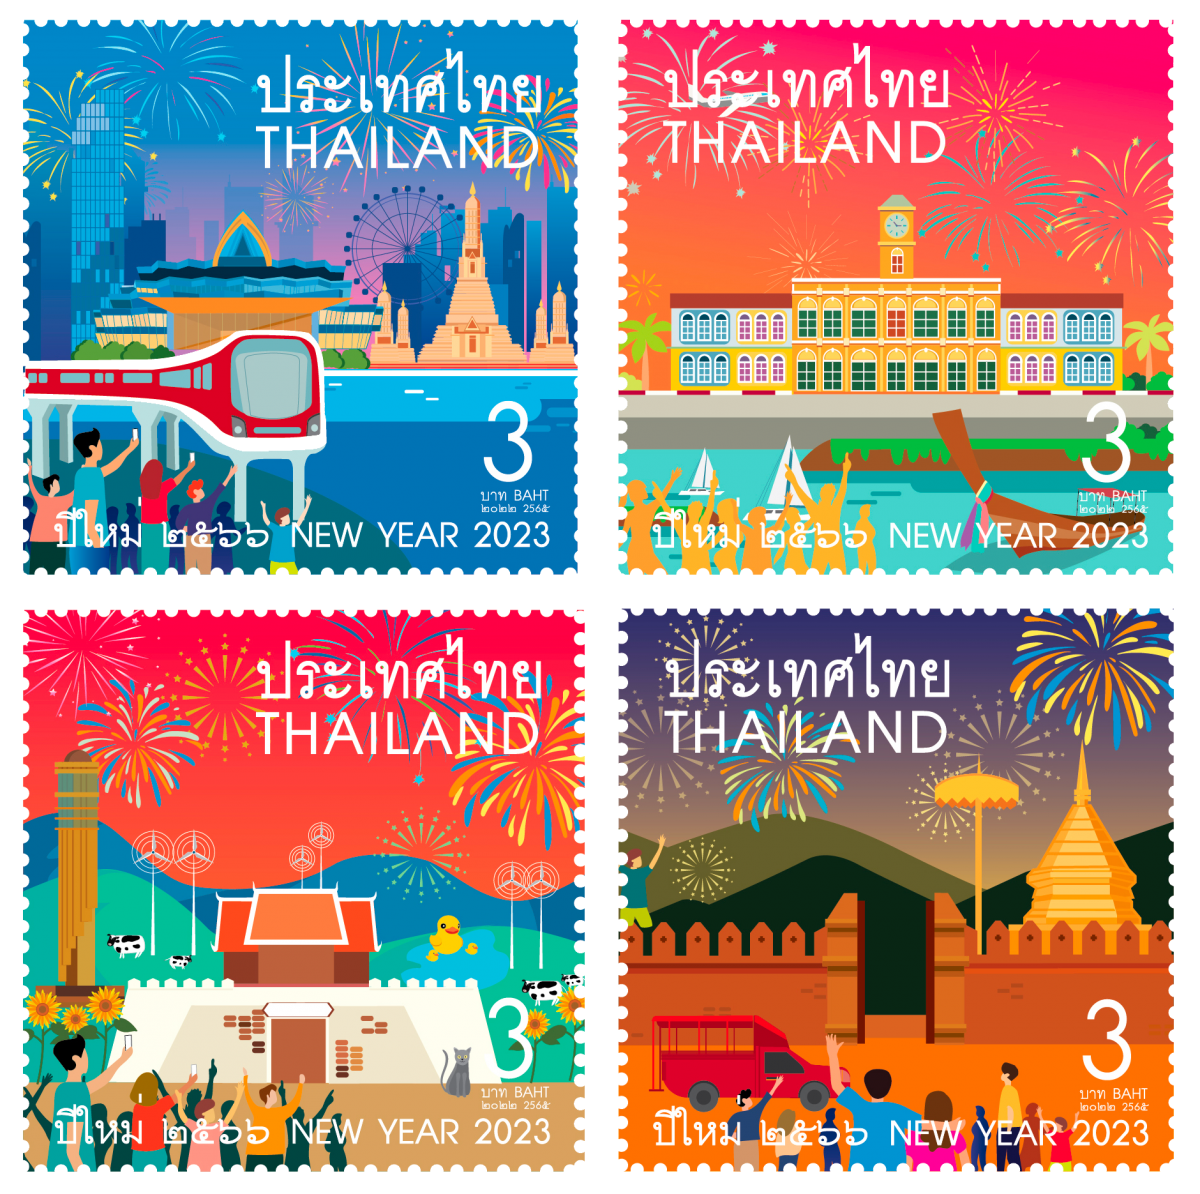 ไปรษณีย์ไทย ร่วมฉลองวันขึ้นปีใหม่ 2566 เปิดตัวแสตมป์แลนด์มาร์ค 4 ภาค พร้อมส่งความสุขทั่วไทย สั่งซื้อได้แล้ววันนี้ทาง Thailandpostmart.com